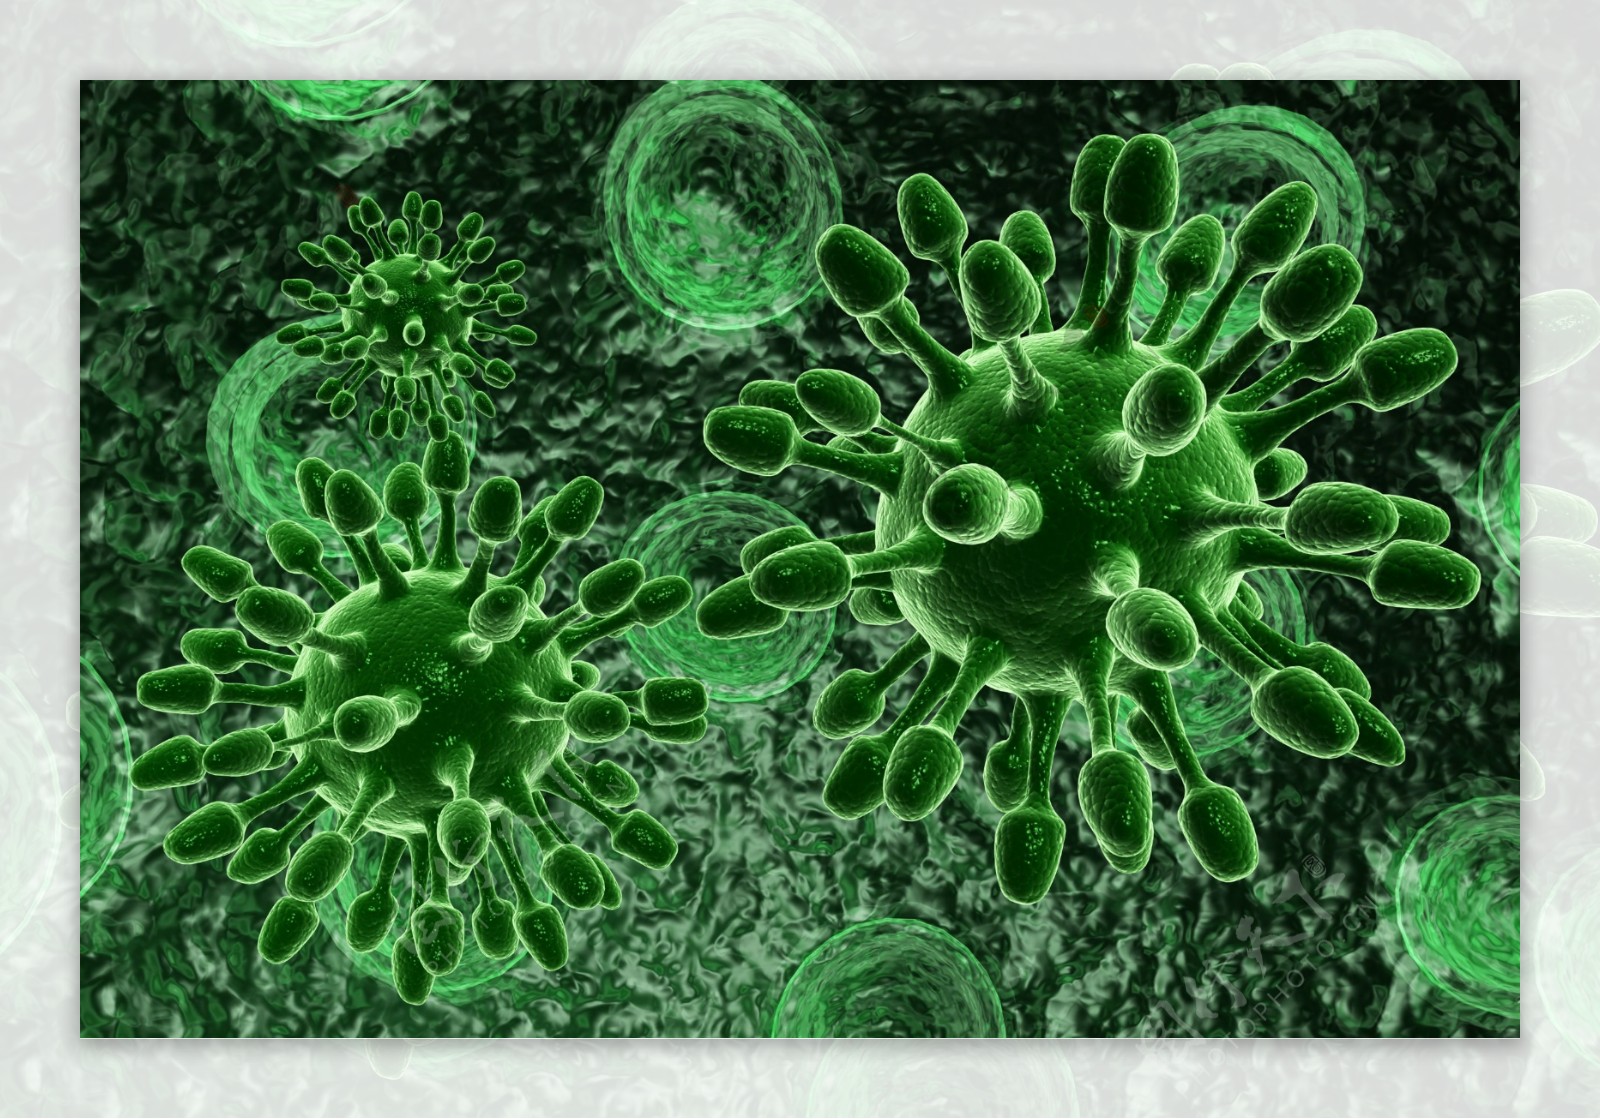 绿色生物细菌图片